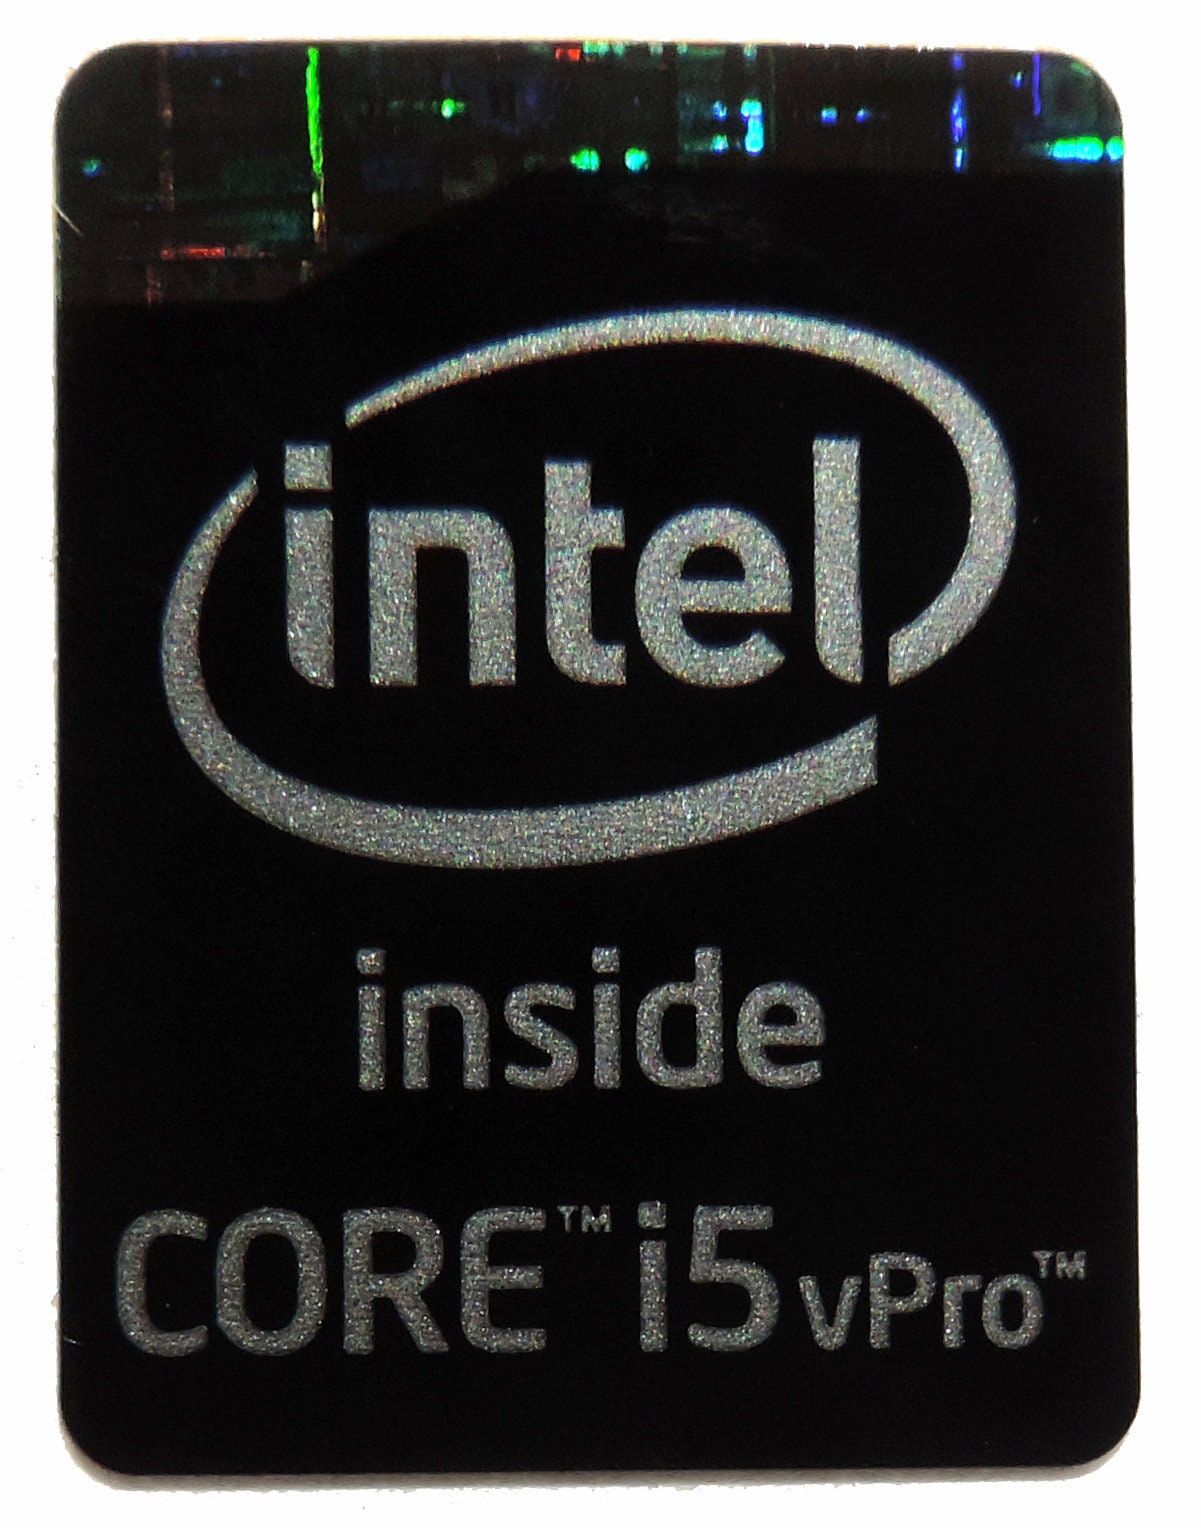 Buy Intel Core I5 Vpro Inside Sticker 16 X 21mm 770 Online in